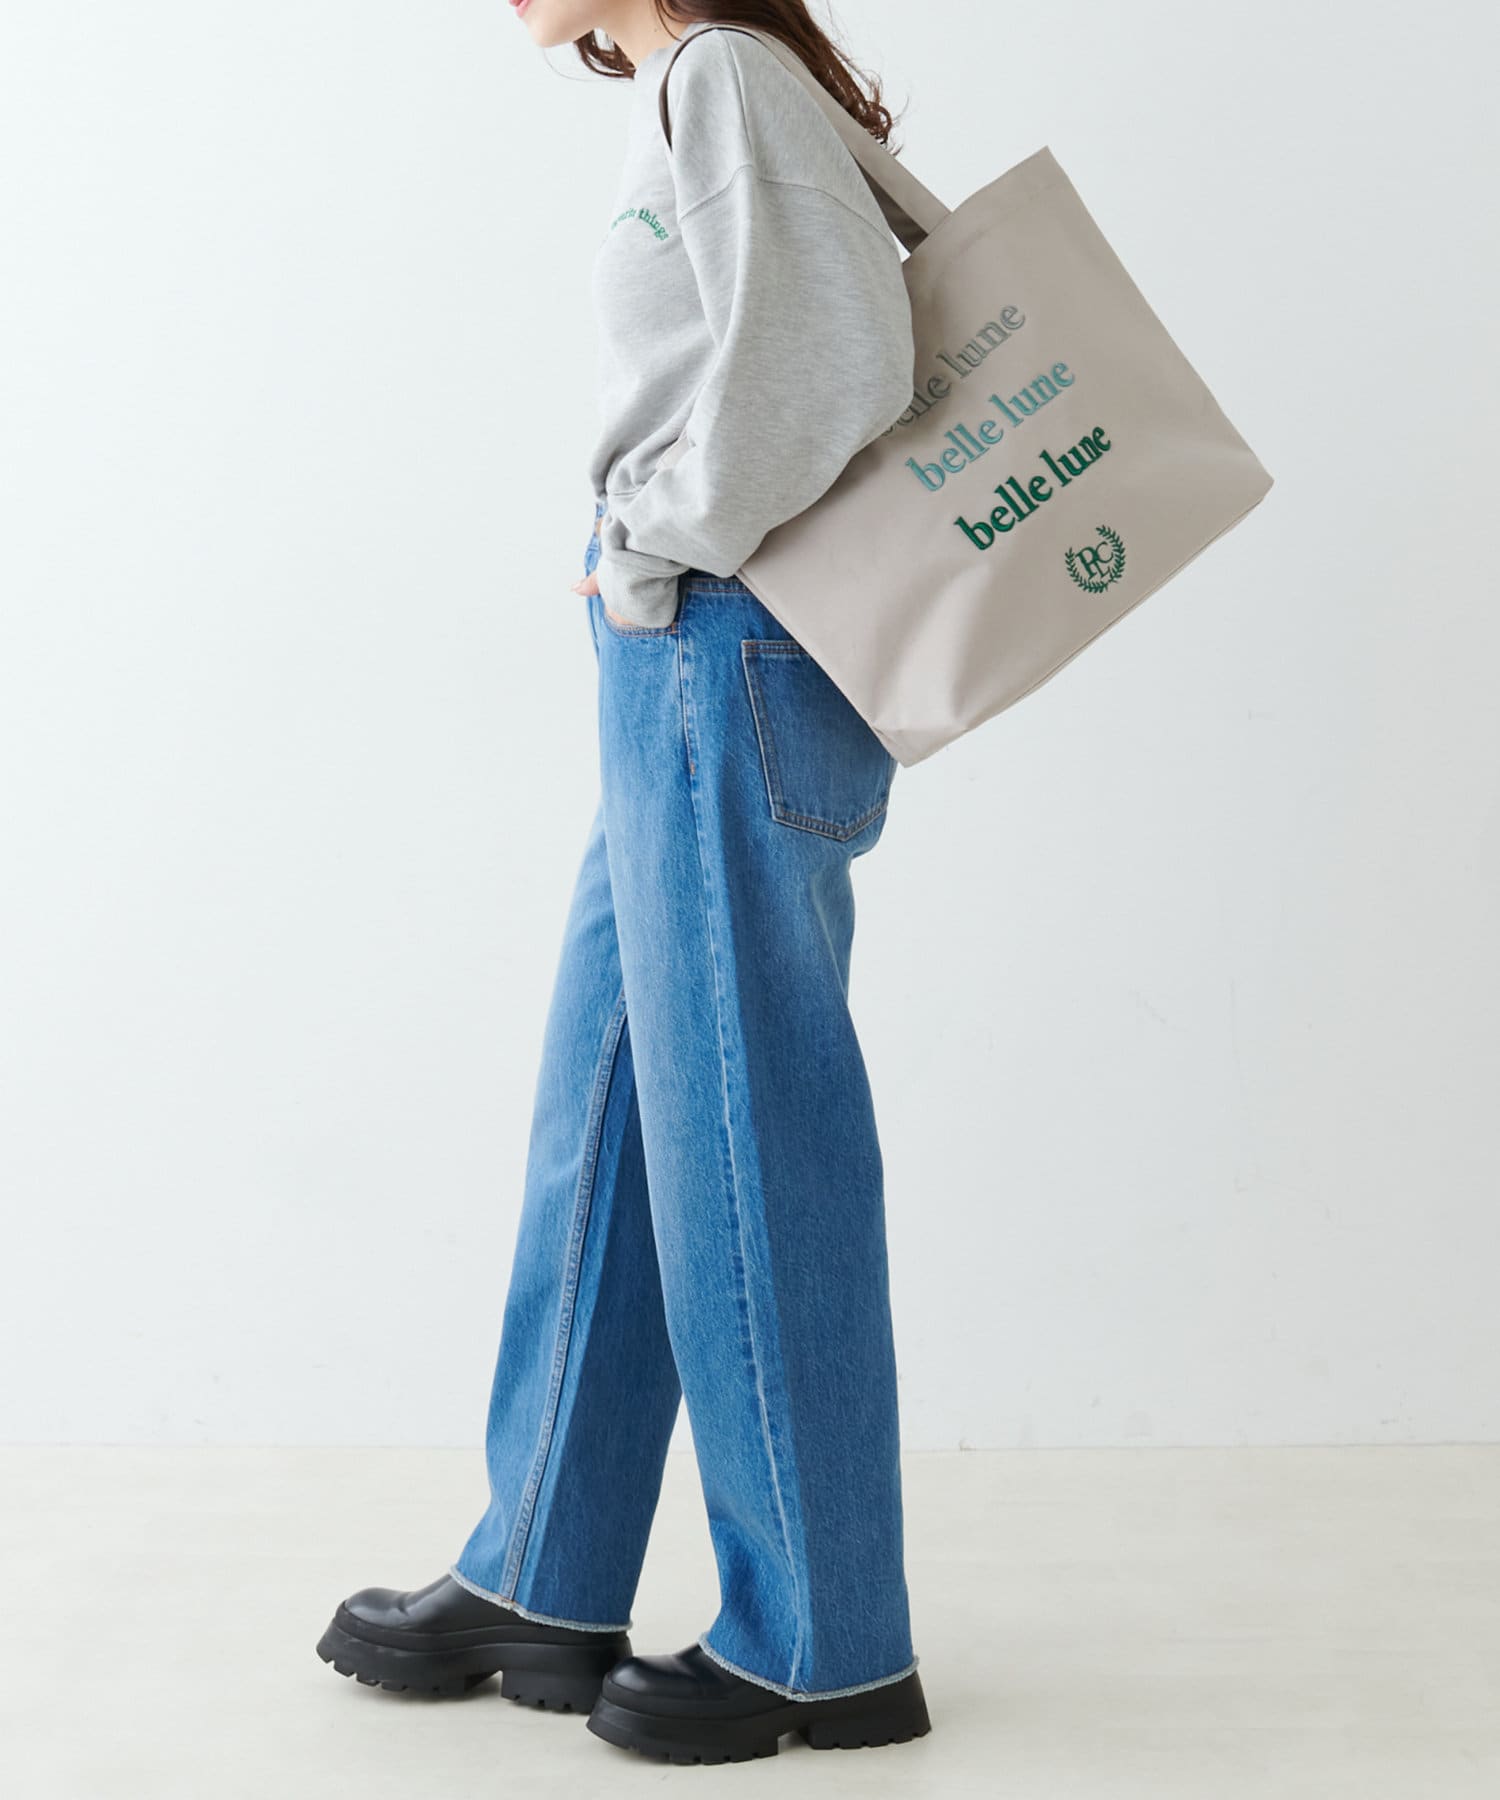 PUAL CE CIN(ピュアルセシン) 【WEB限定】グラデーションカラーロゴ刺繍トートバッグ